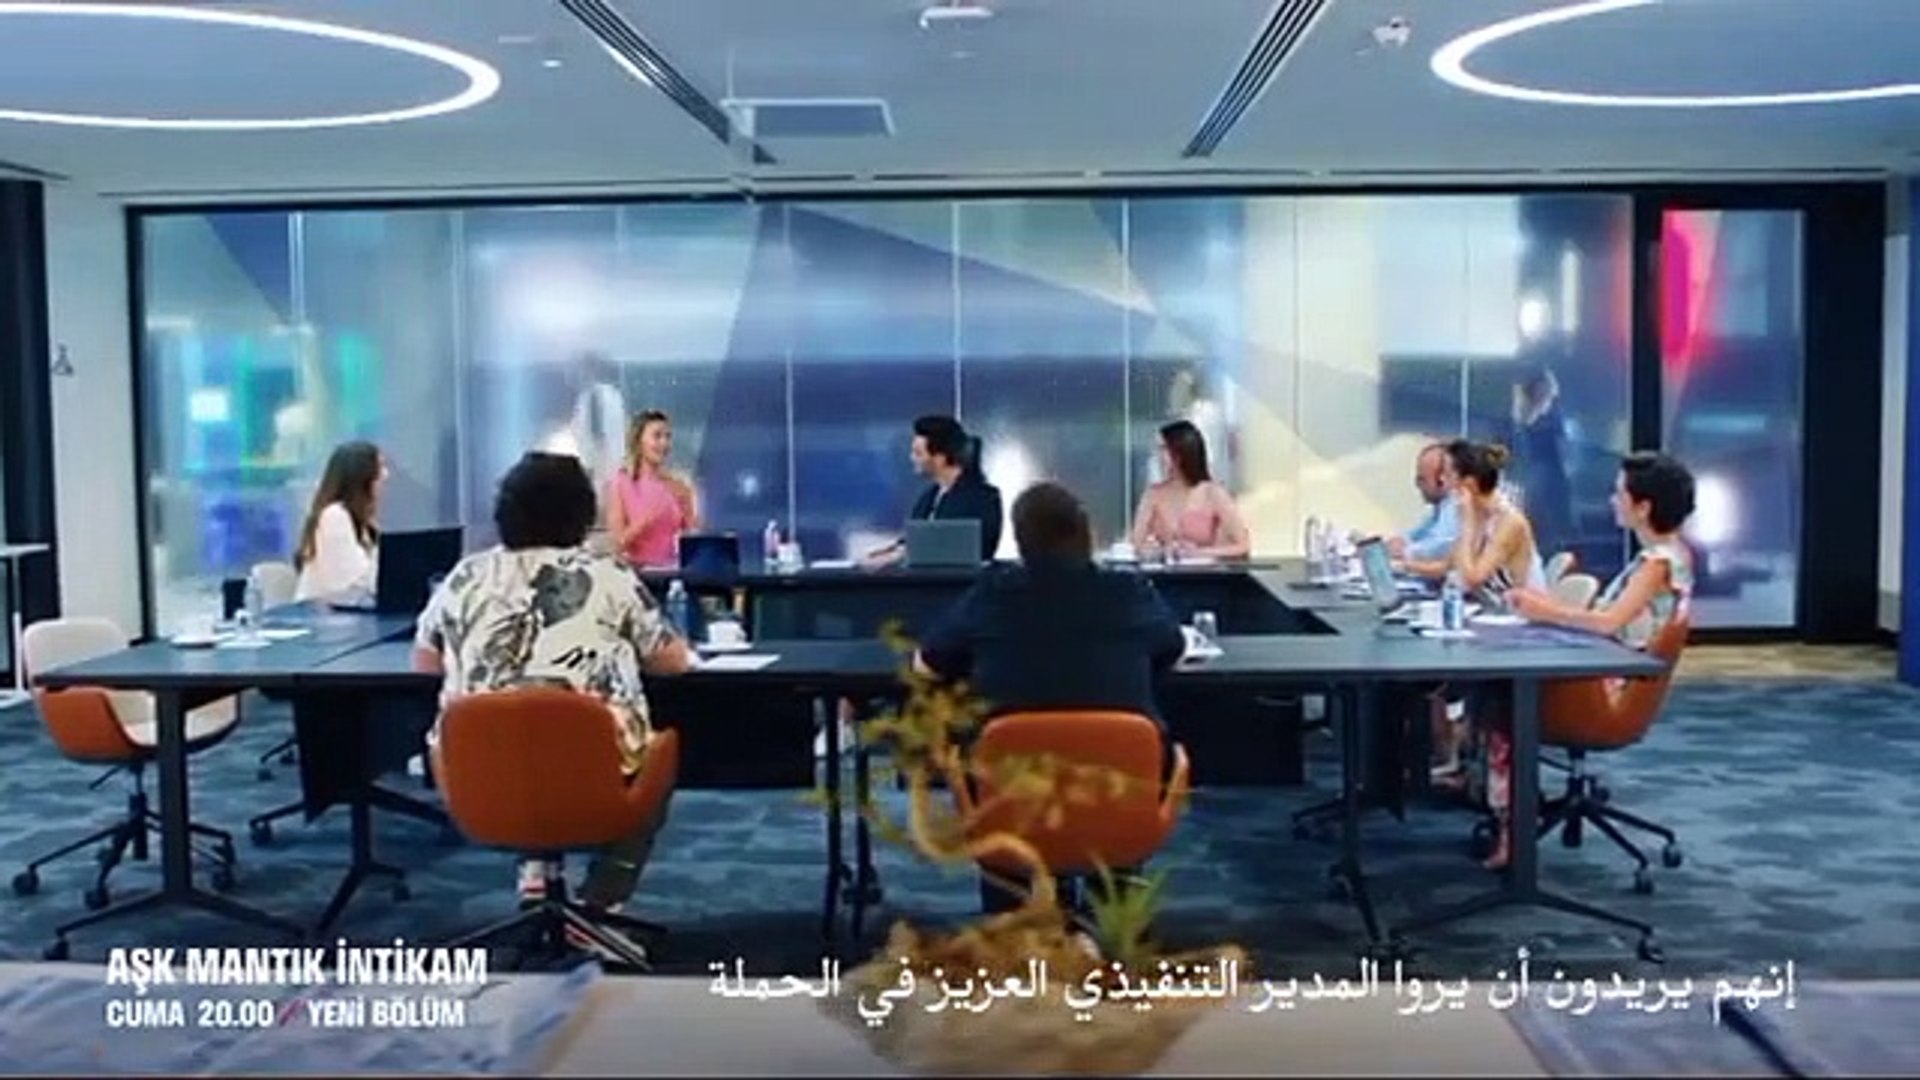 كئيب لب البيت الأخضر  مسلسل حب منطق انتقام الحلقة 6 إعلان 2 مترجم للعربية - video Dailymotion